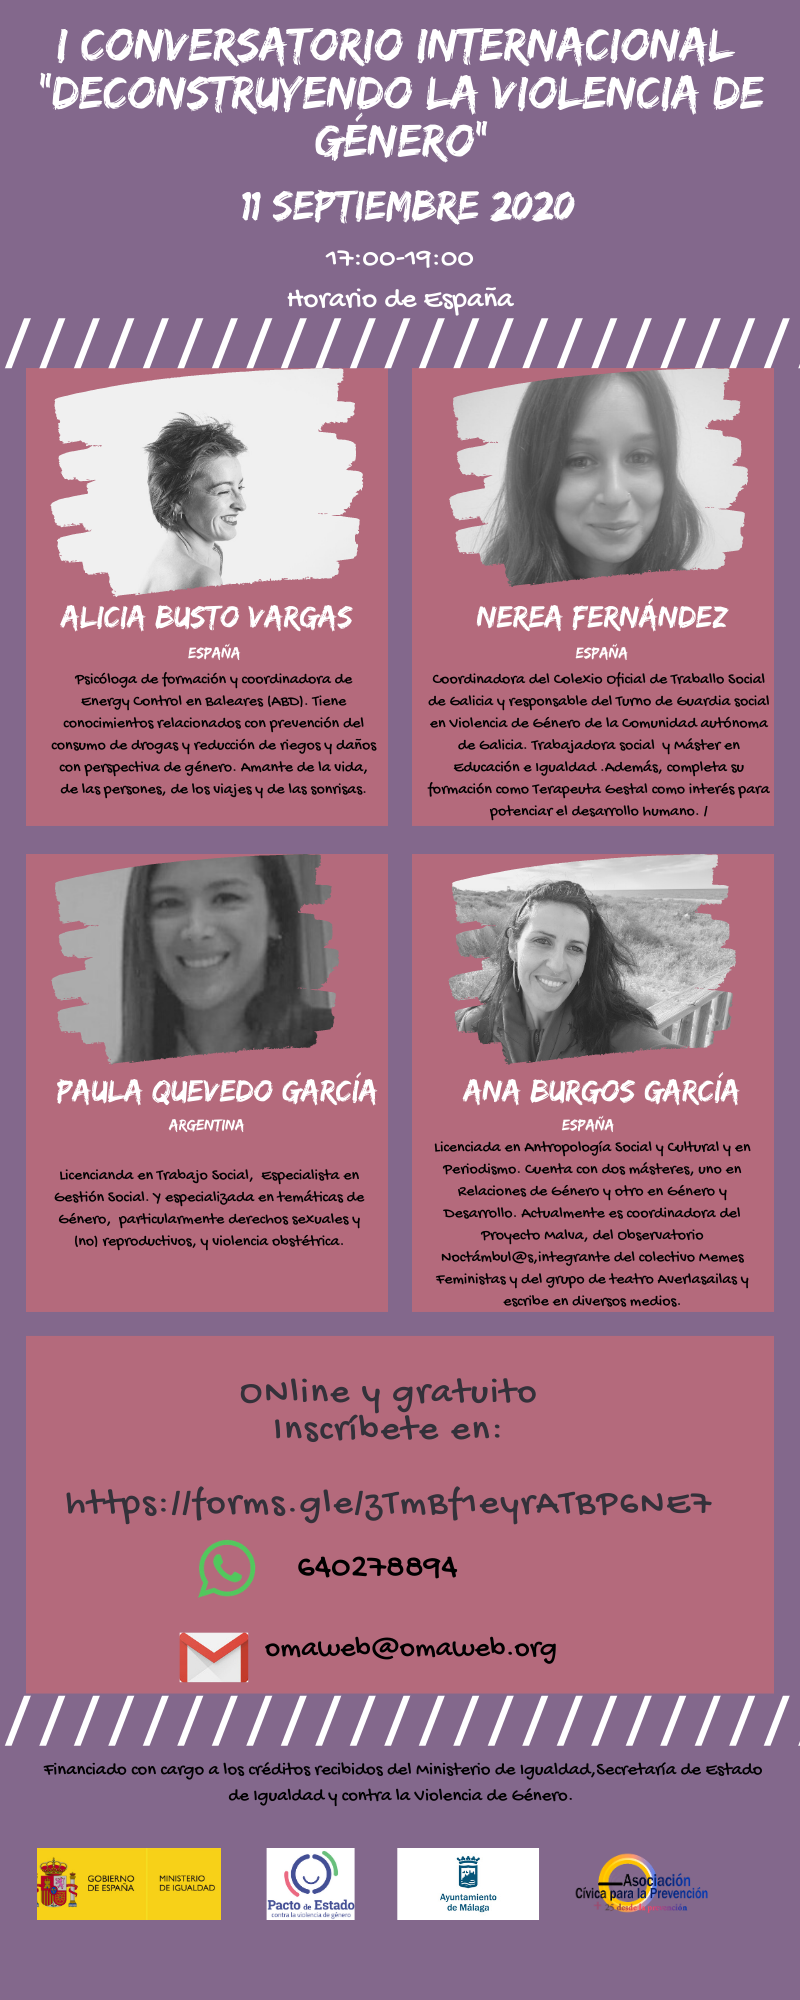 I Conversatorio Internacional "Deconstruyendo la violencia de género" // On line